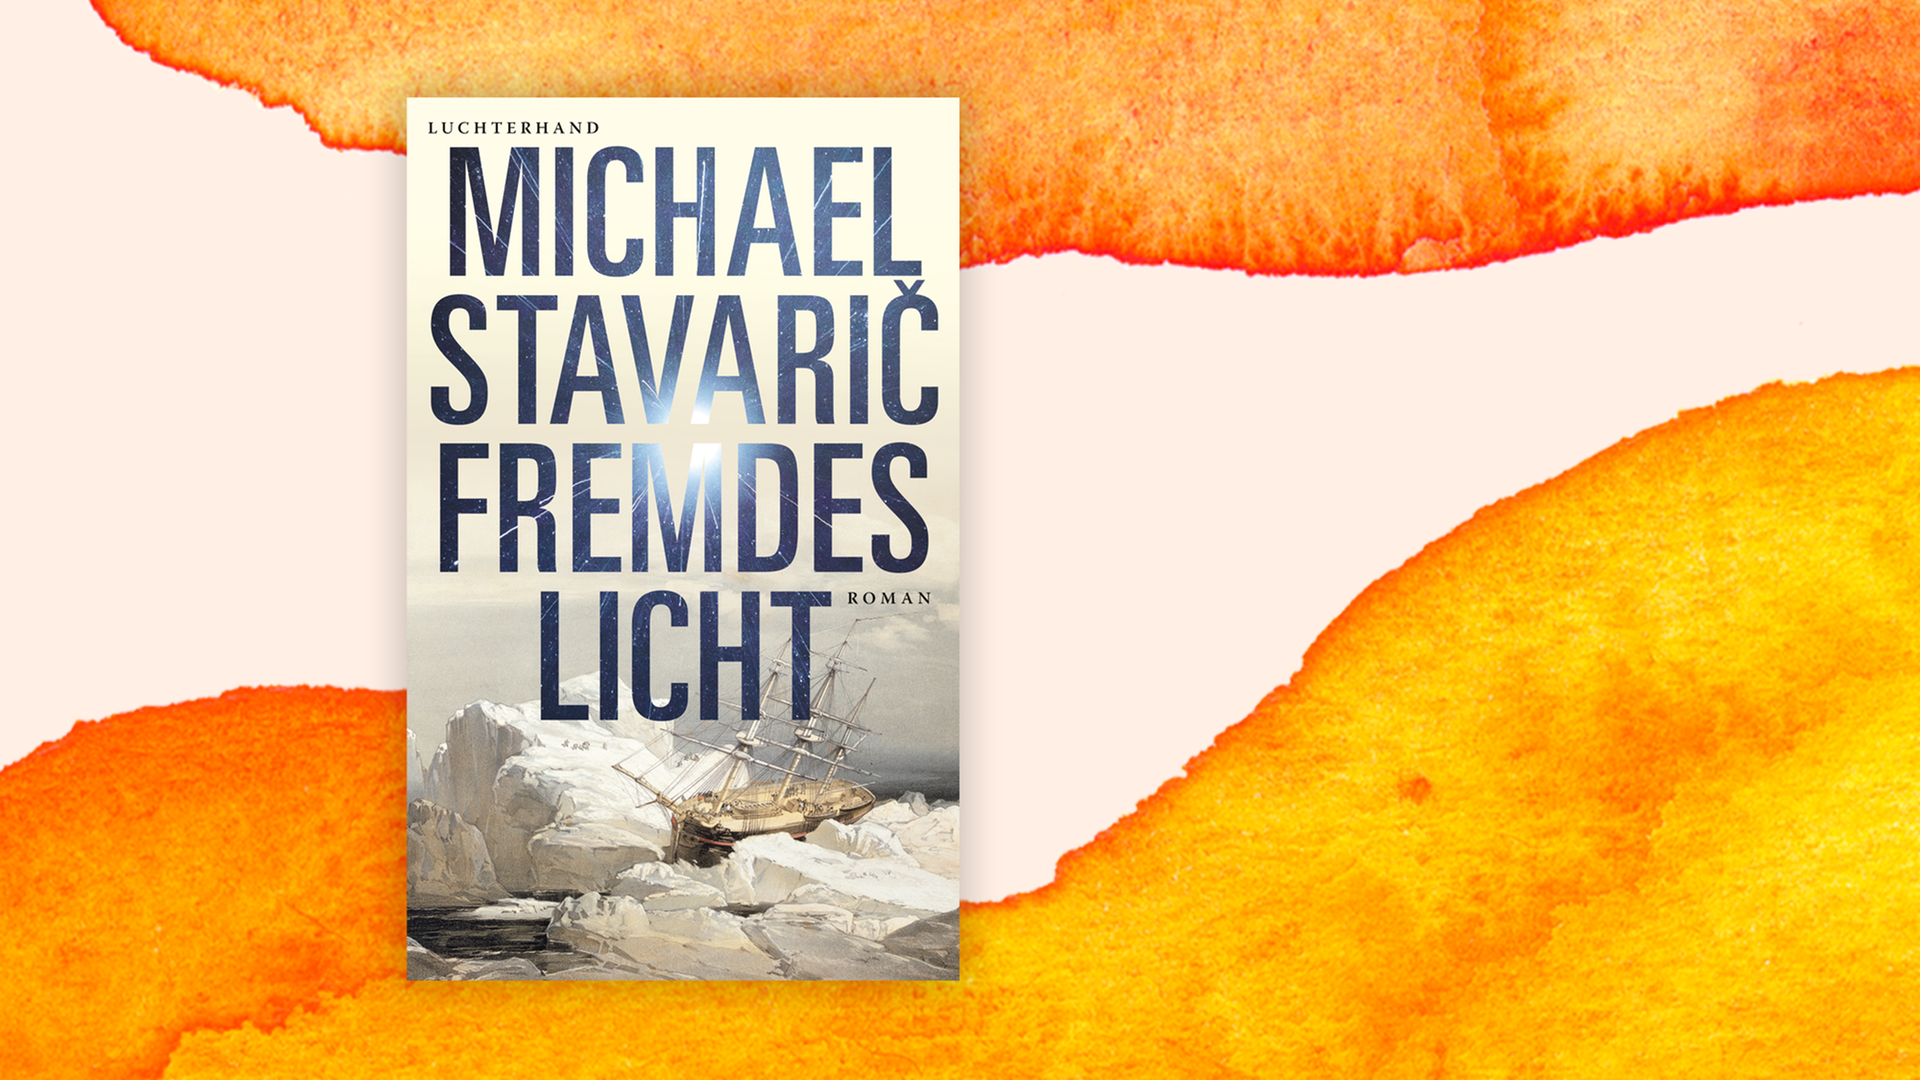 Buchcover "Fremdes Licht" von Michael Stavarič. Zu sehen ist eine grafische Darstellung eines alten Holzschiffes, das zwischen Eisschollen eingeklemmt ist.